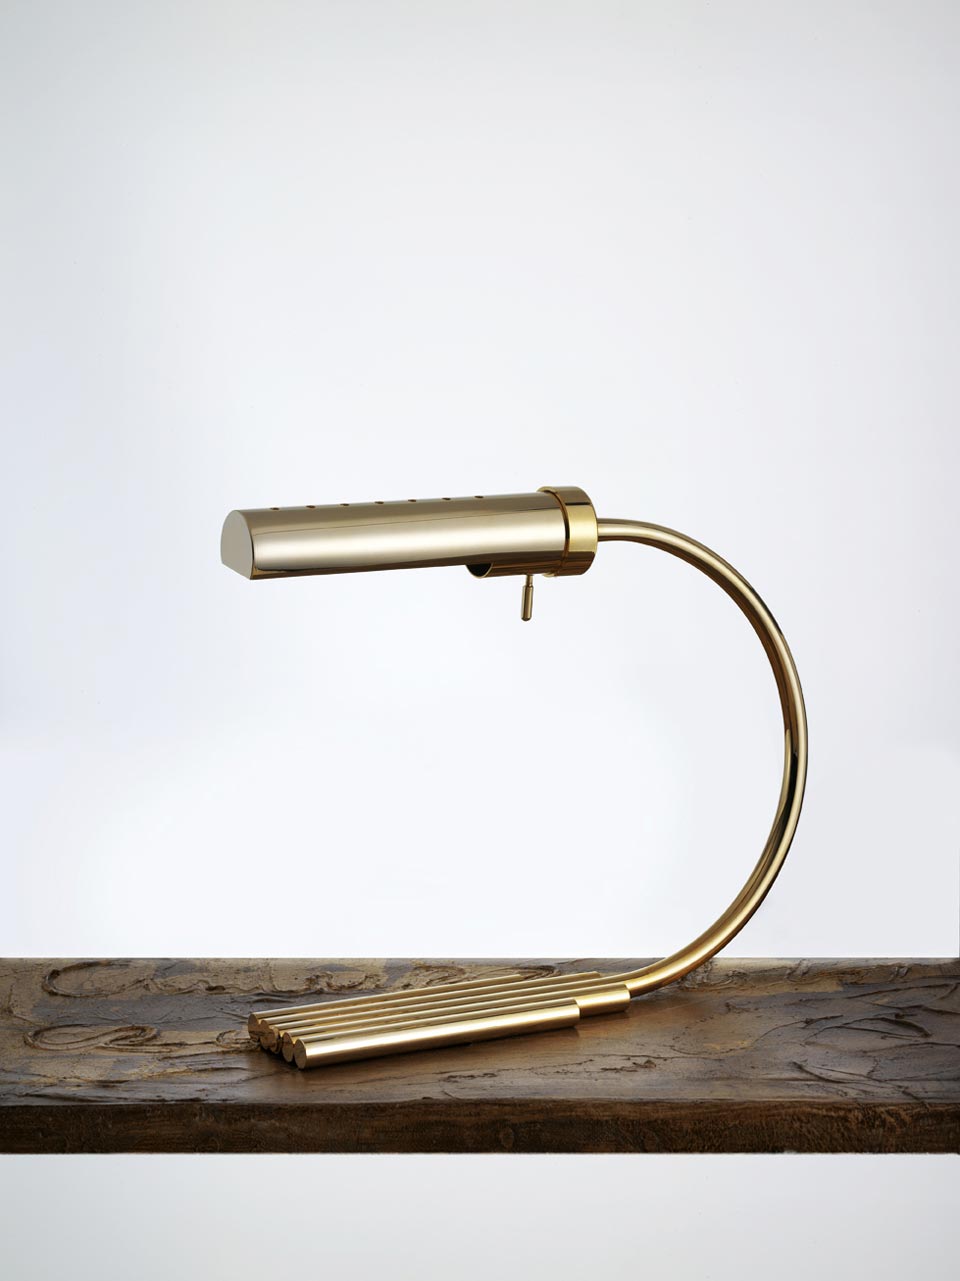 Golden metal desk lamp, minimalist design. Contract&More. 